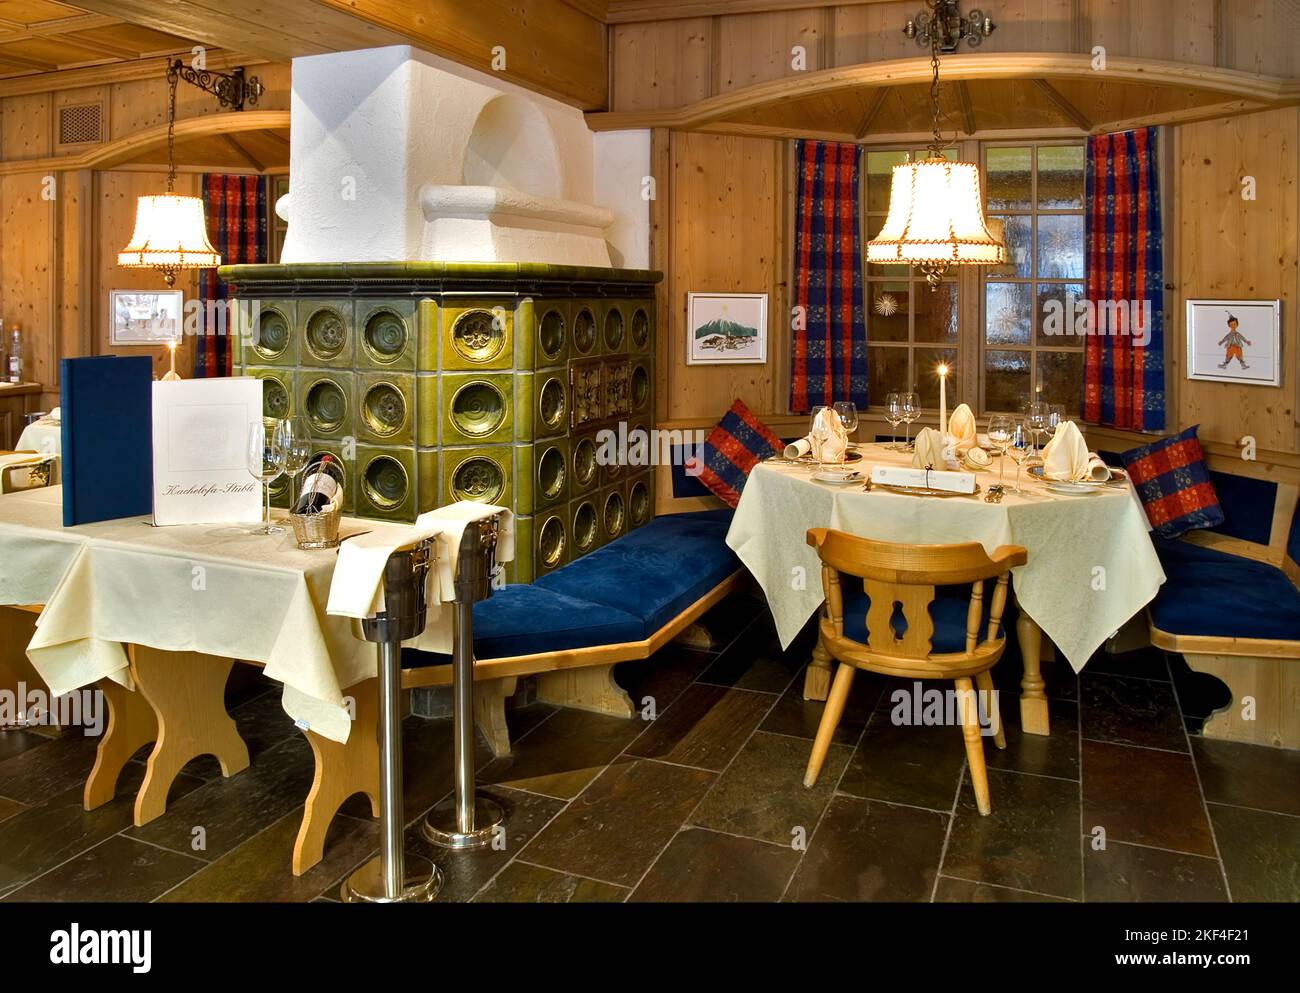 Candle light dinner Set von einem Restaurant. Kaminofen, Kachelofen, Schweiz, Stock Photo